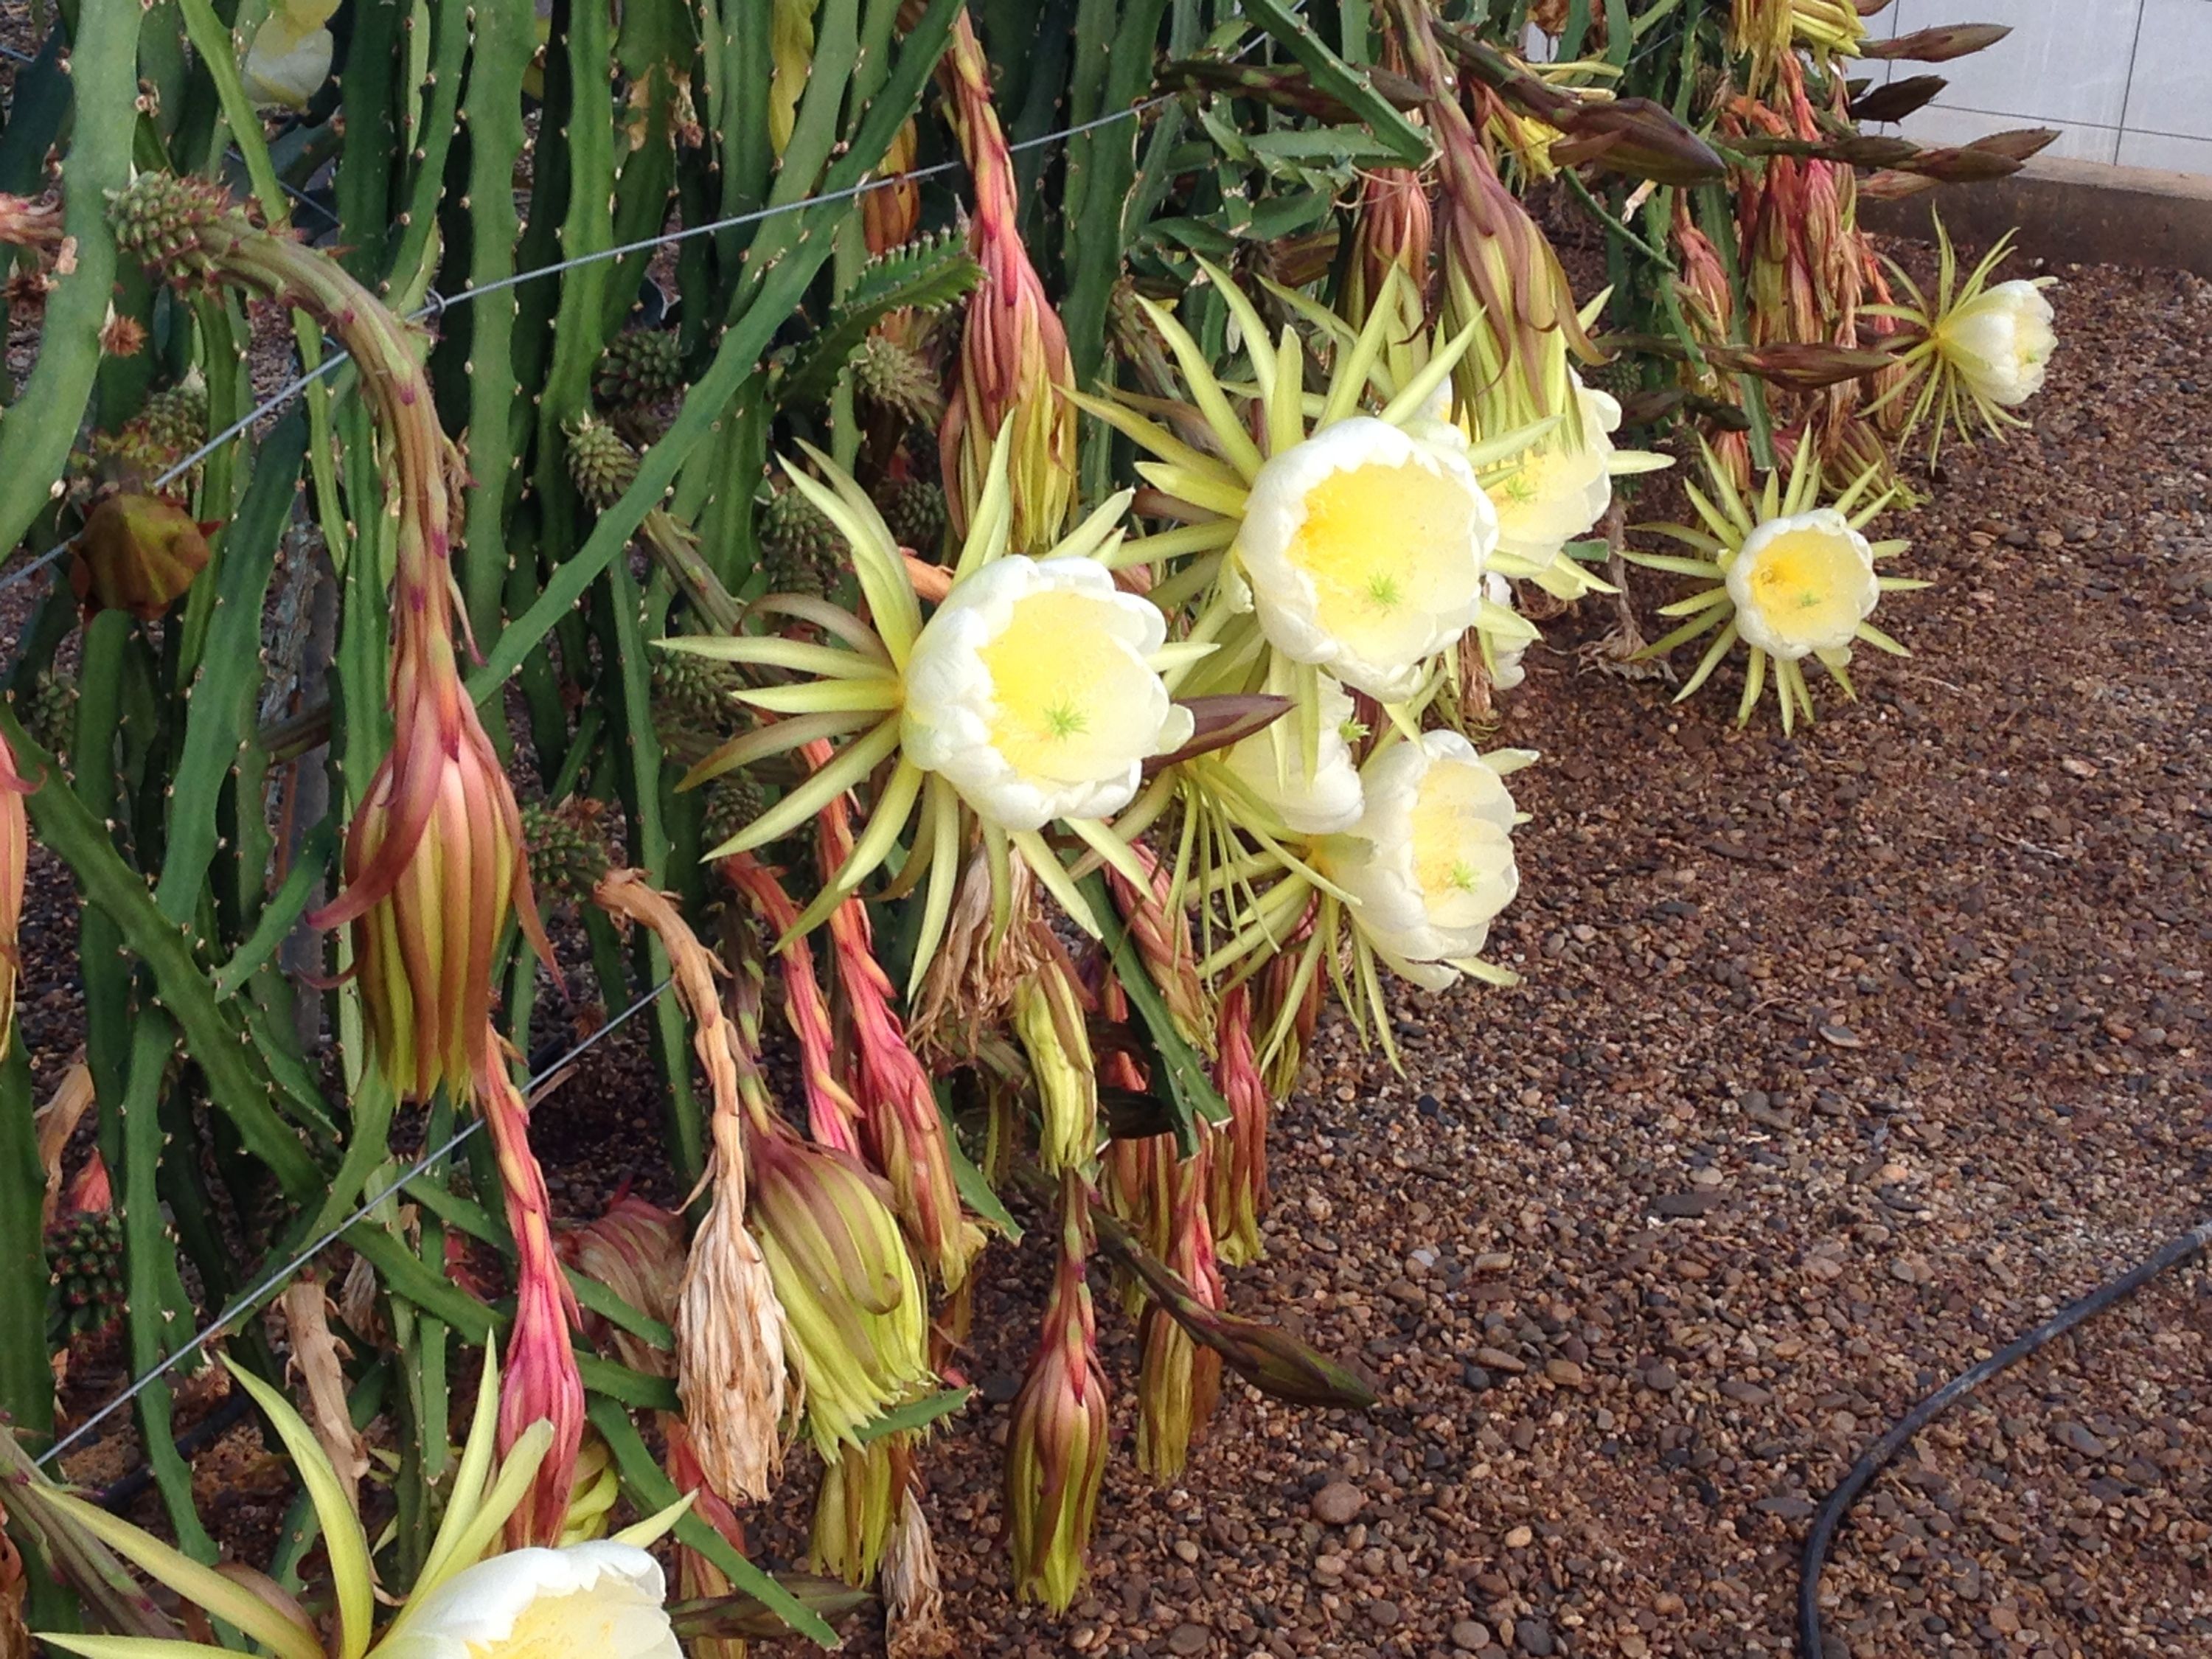 Imagen de flores de pitaya abiertas cultivadas en sistema hidropónico bajo invernadero